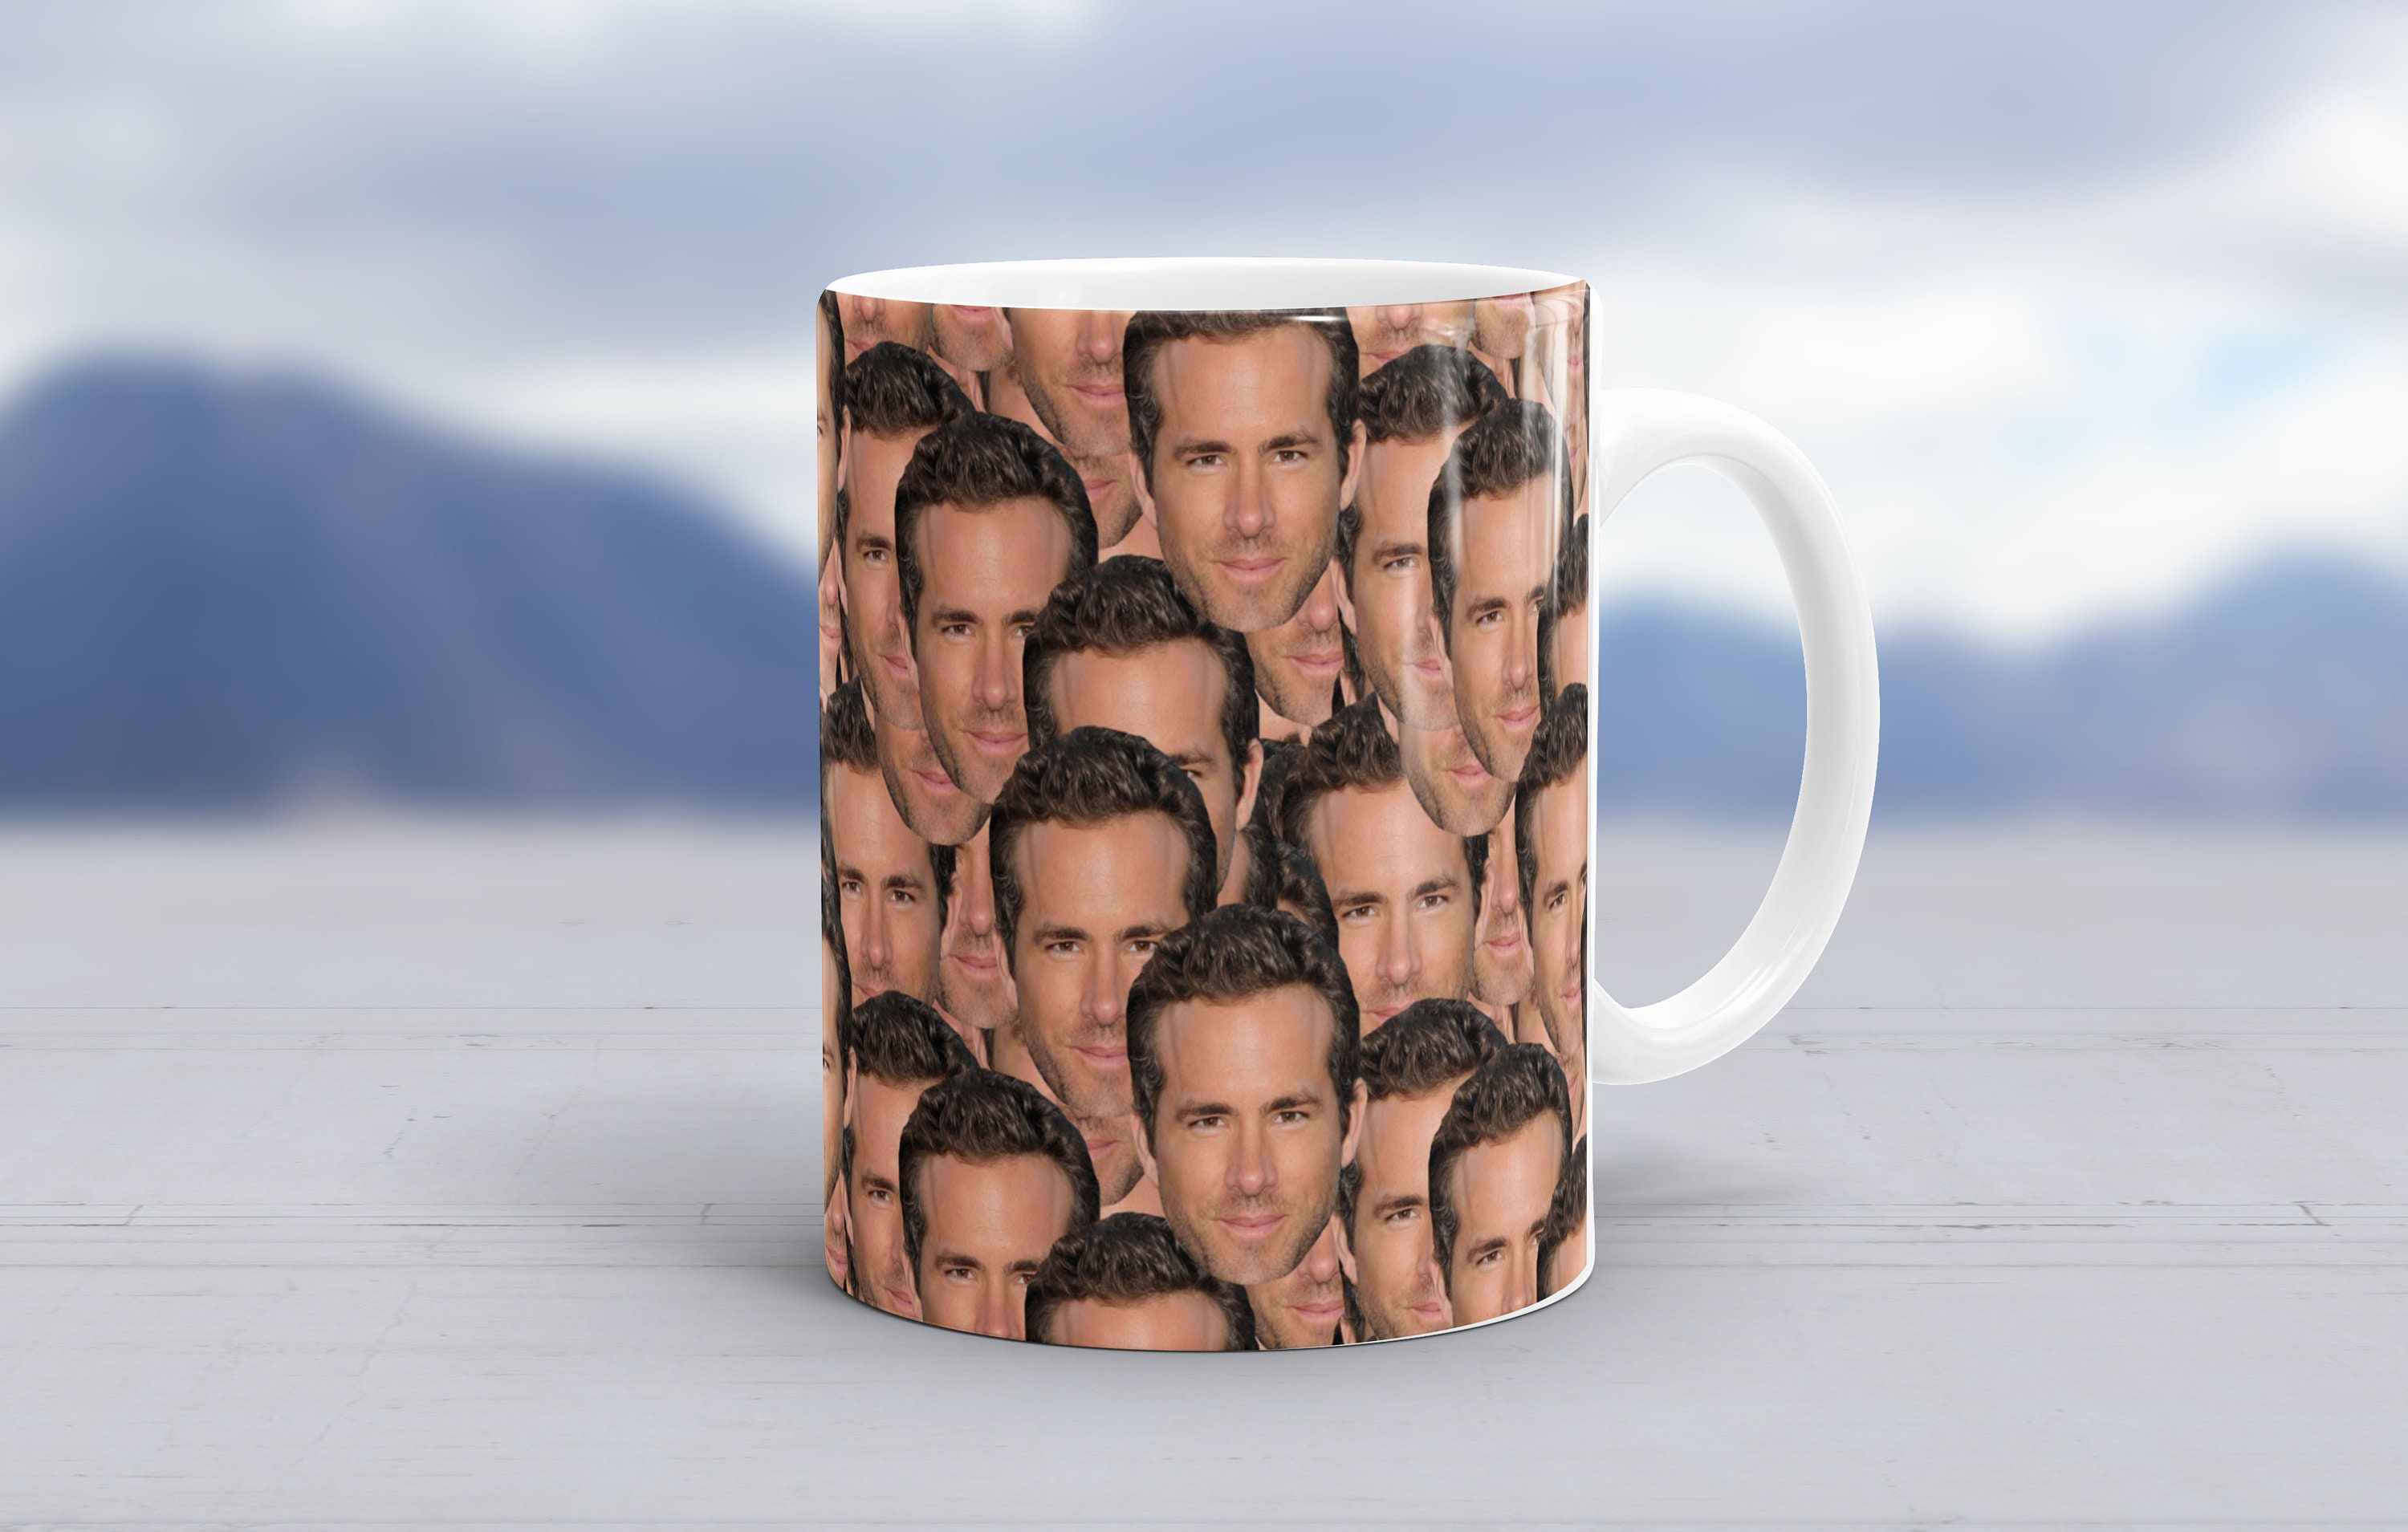 Ryan Reynolds Coffee Mug Fan Gift for Best Friend Gift for Women Superhero  Gift for Men Gag Gifts Black Mugs